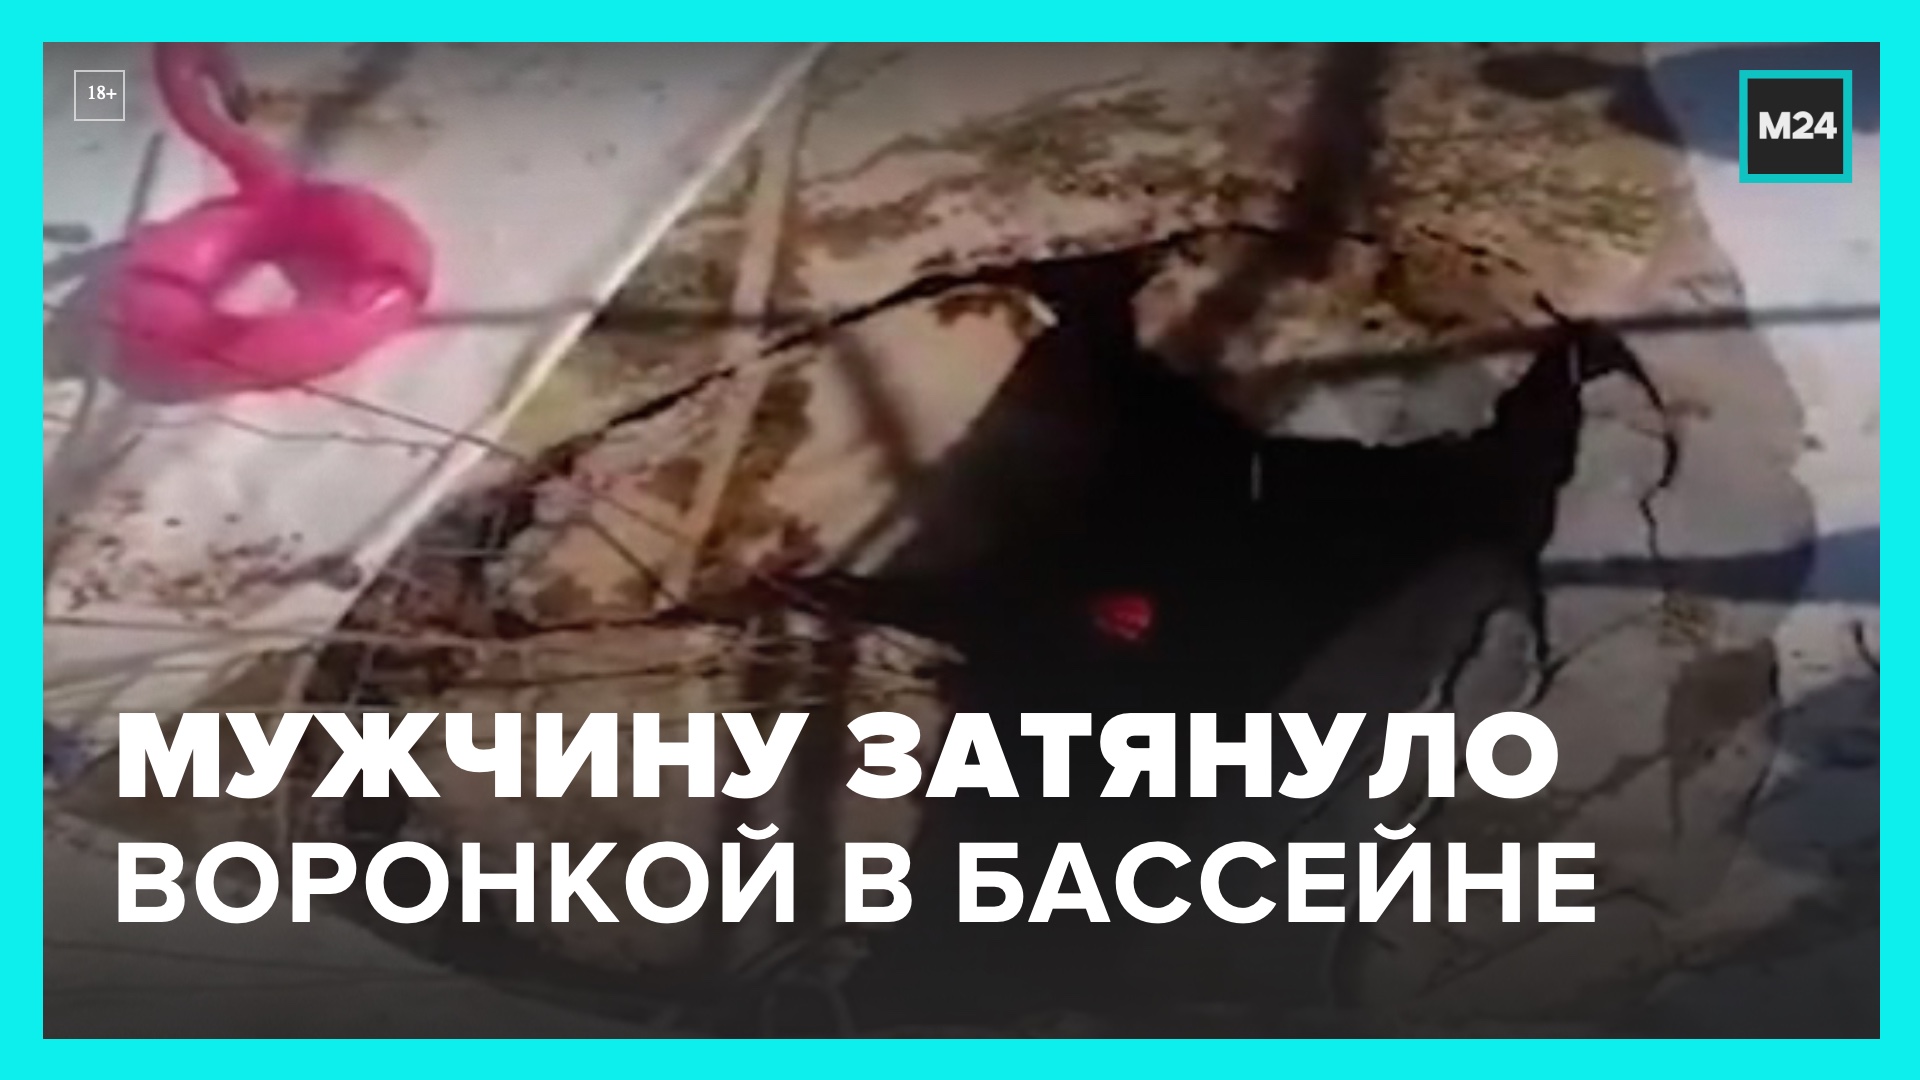 обрушение аквапарка в москве 2004 список погибших